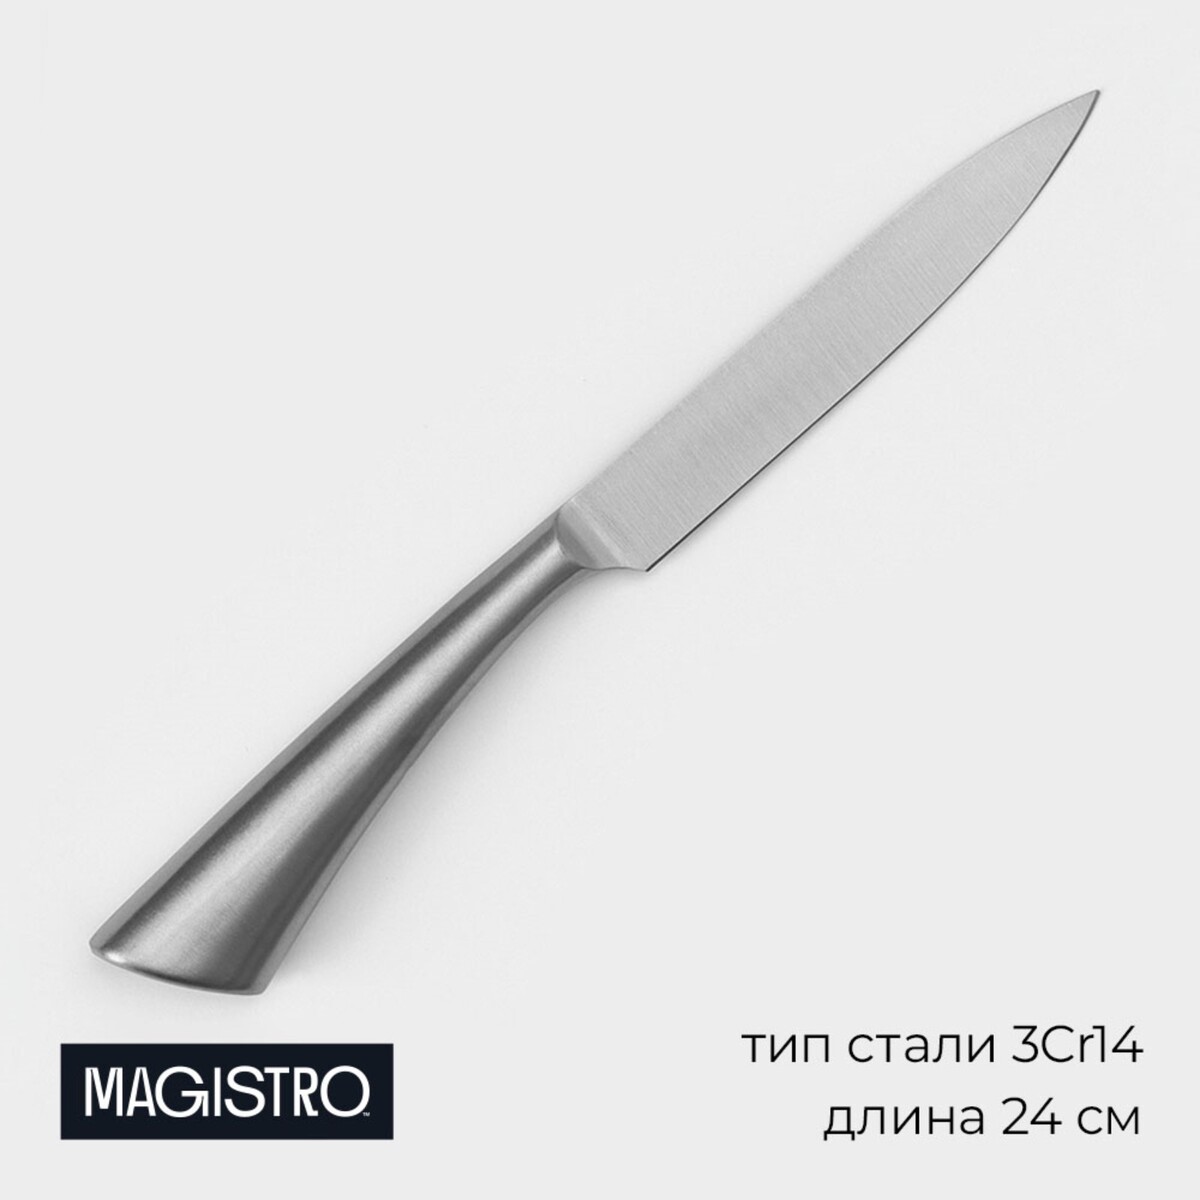 Нож кухонный magistro ardone, лезвие 12,5 см, цвет серебристый нож кухонный magistro ardone лезвие 12 5 см серебристый